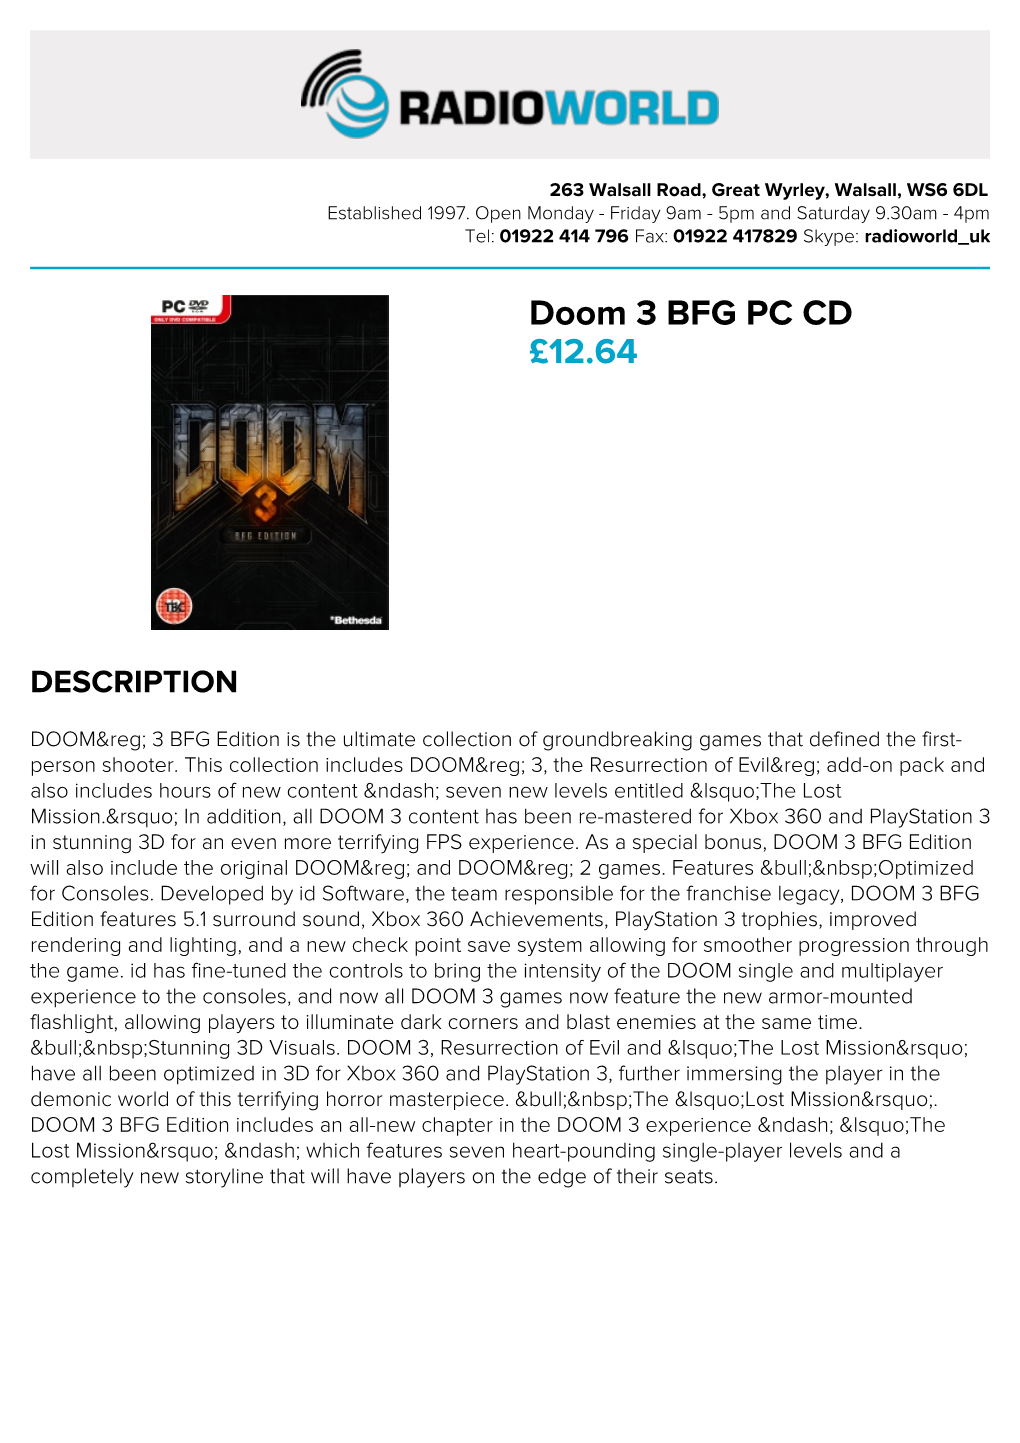 Doom 3 BFG PC CD £12.64